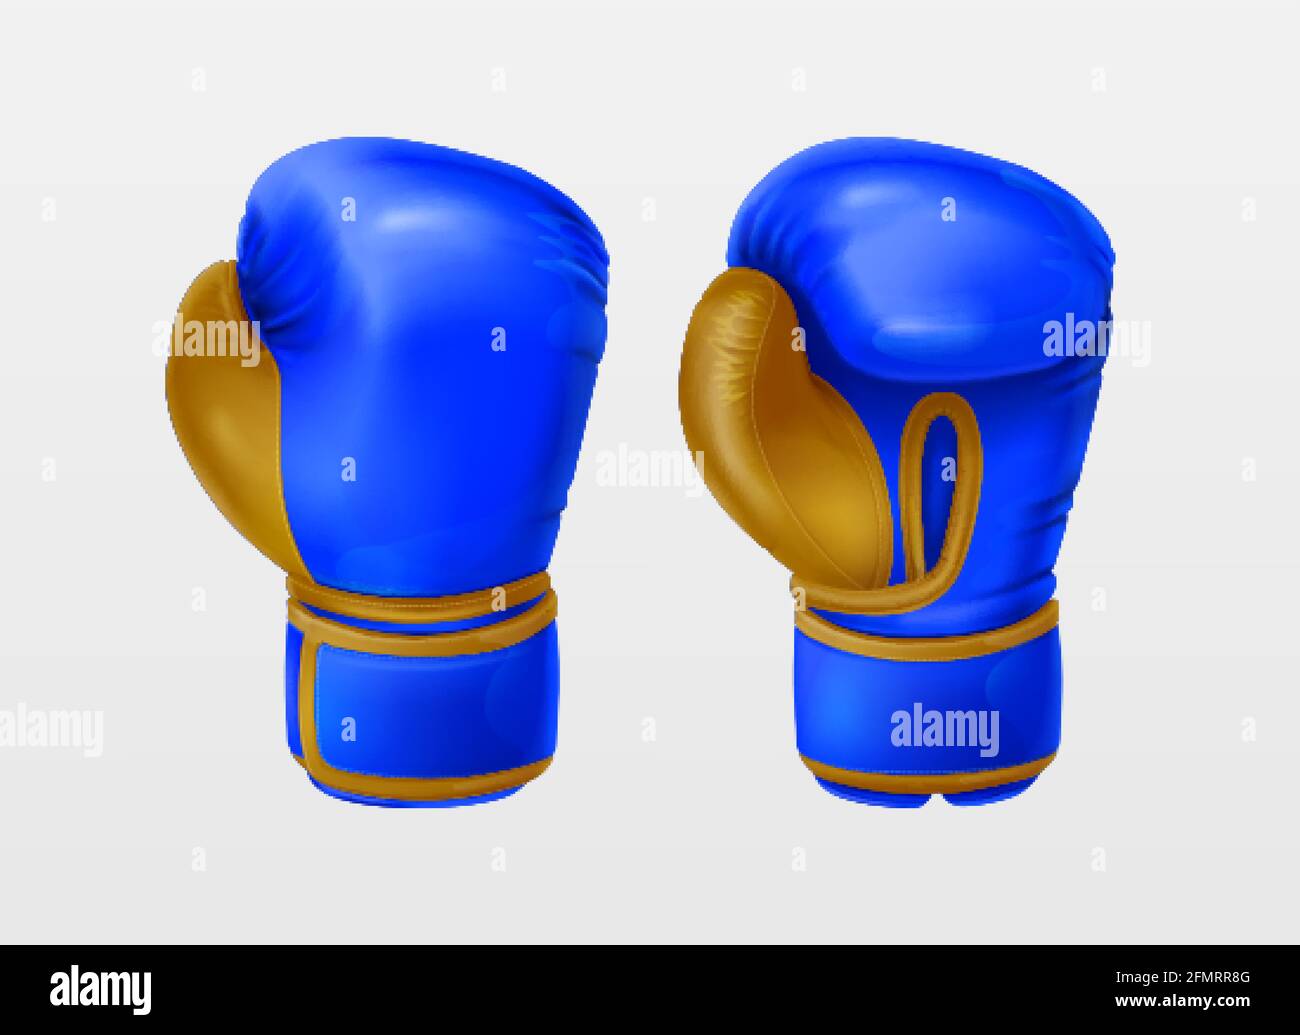 Los guantes de boxeo rojos golpean una pera los guantes de boxeo